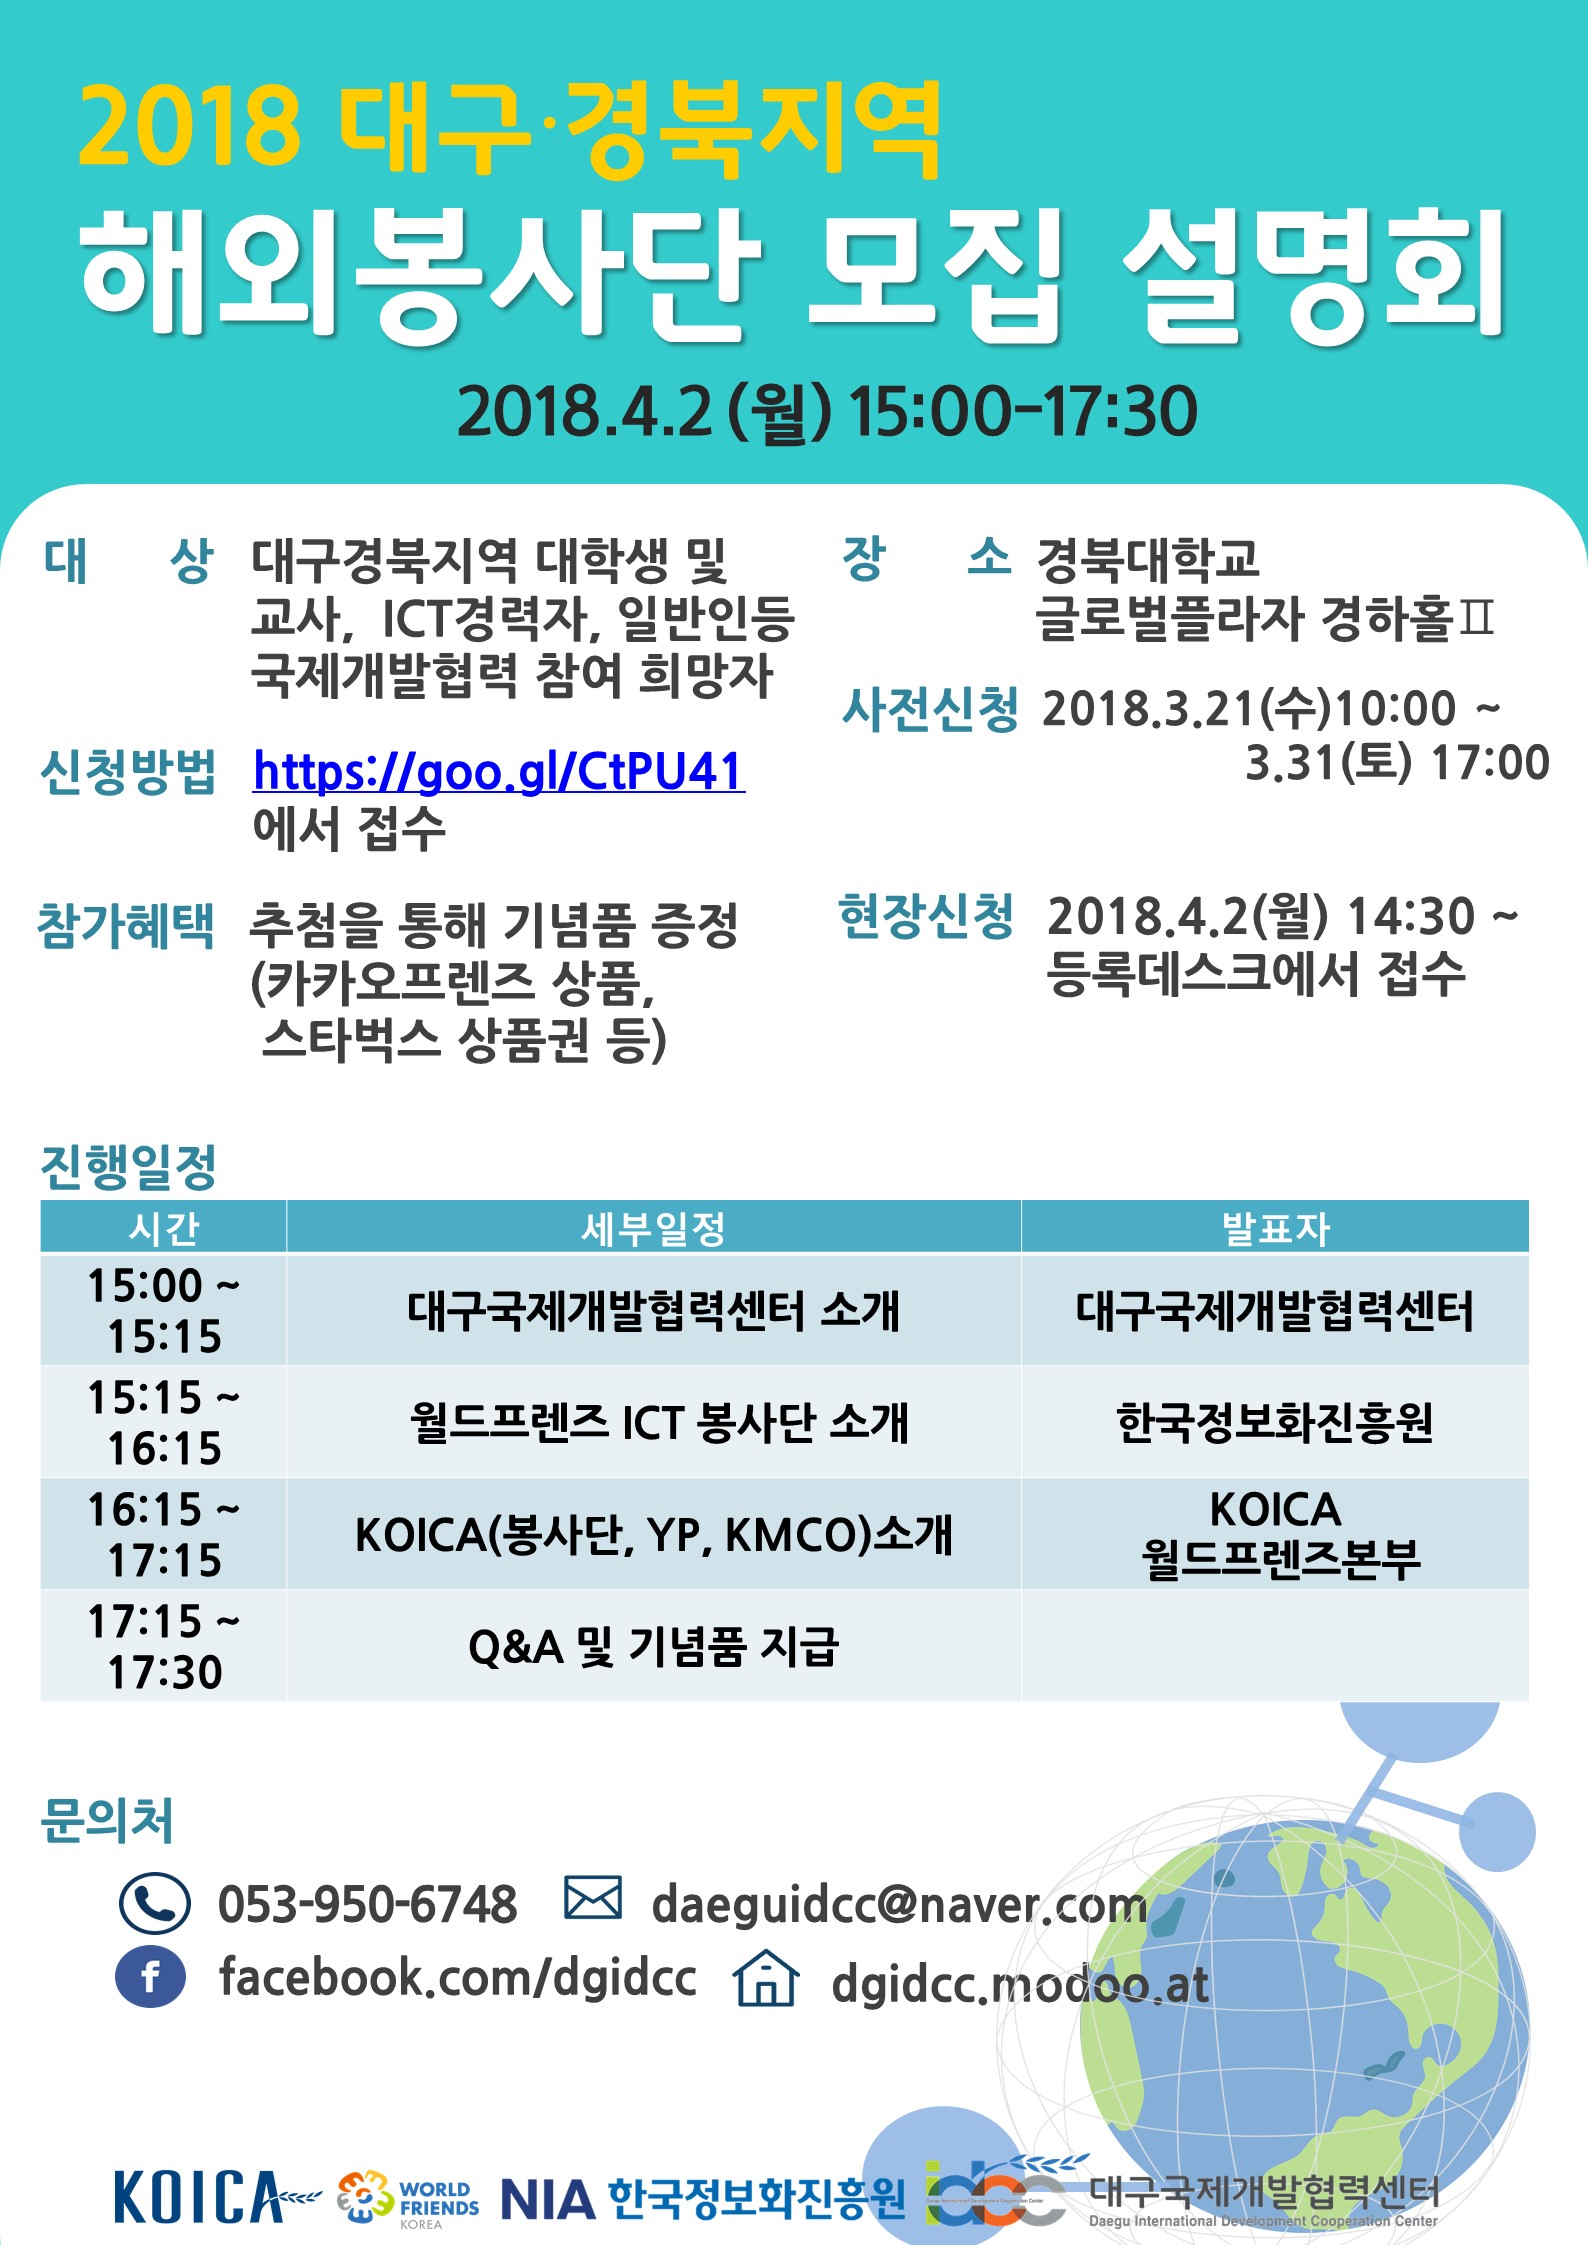 대구국제개발협력센터 2018 해외봉사단 모집 설명회 개최 안내